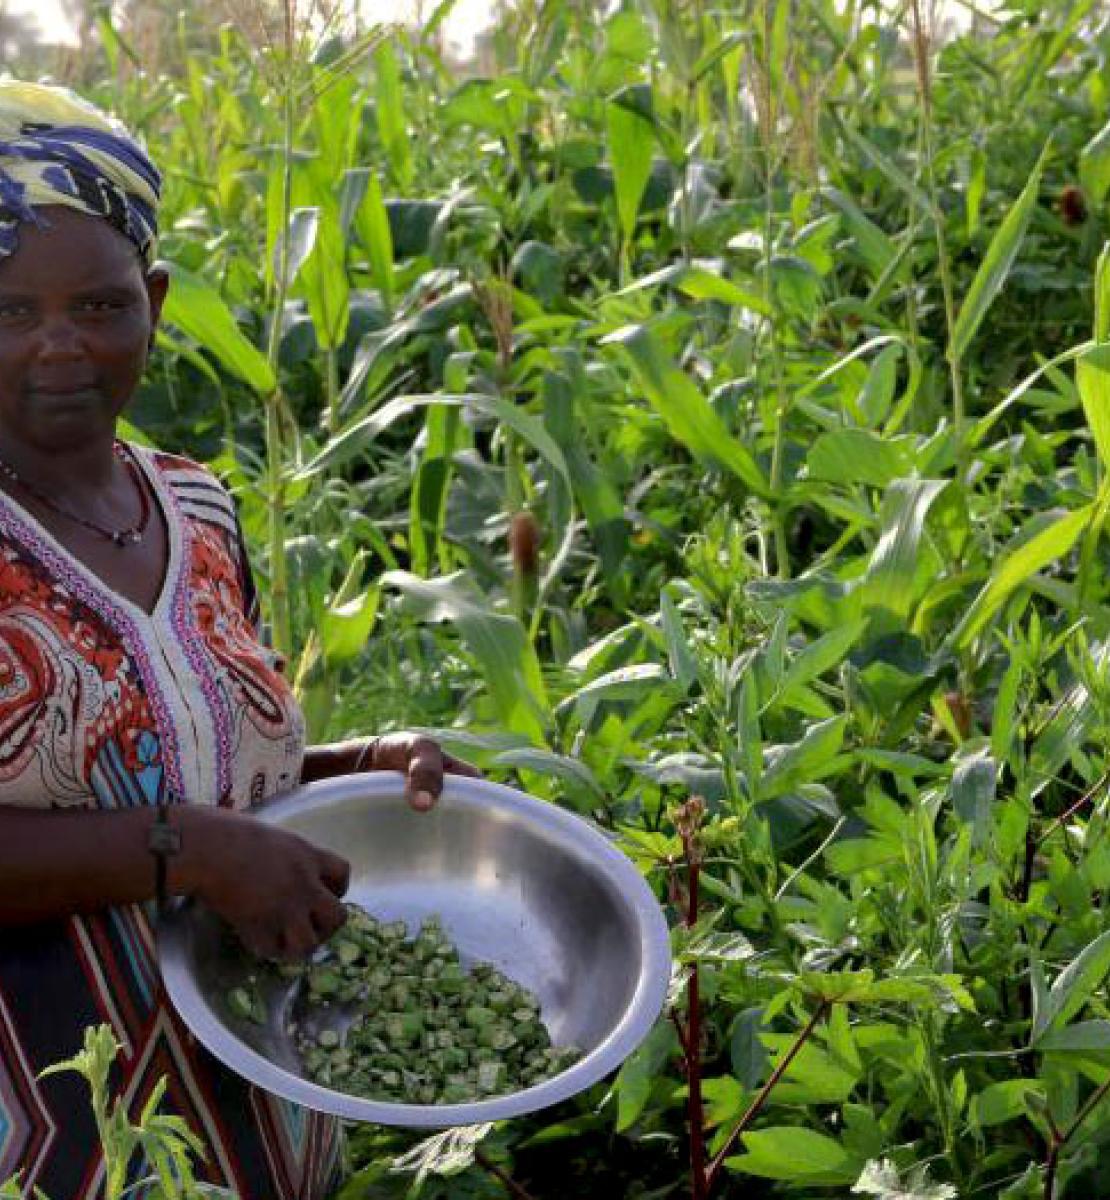 امرأة تحمل وعاء من الفاصوليا وهي تقف في وسط حقل خصب من المحاصيل.